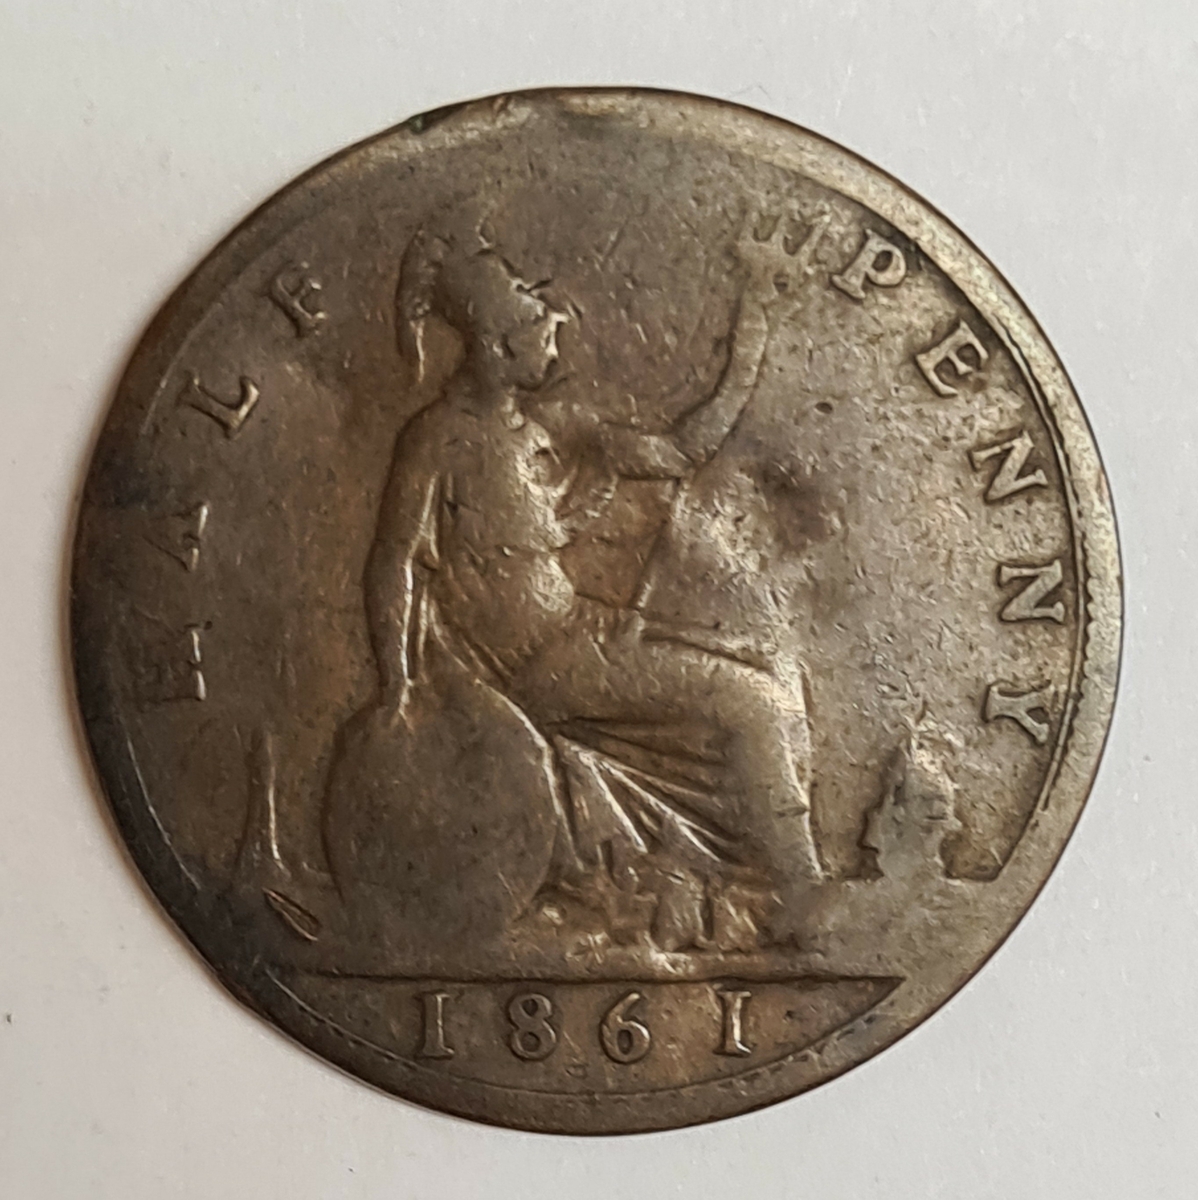 Åtta mynt från Storbritanien.
½ Penny, 1868
½ Penny, 1861
½ Penny, 1862
½ Penny, 1861
½ Penny, 1861
½ Penny, 1861
½ Penny, 1861
½ Penny, 1861